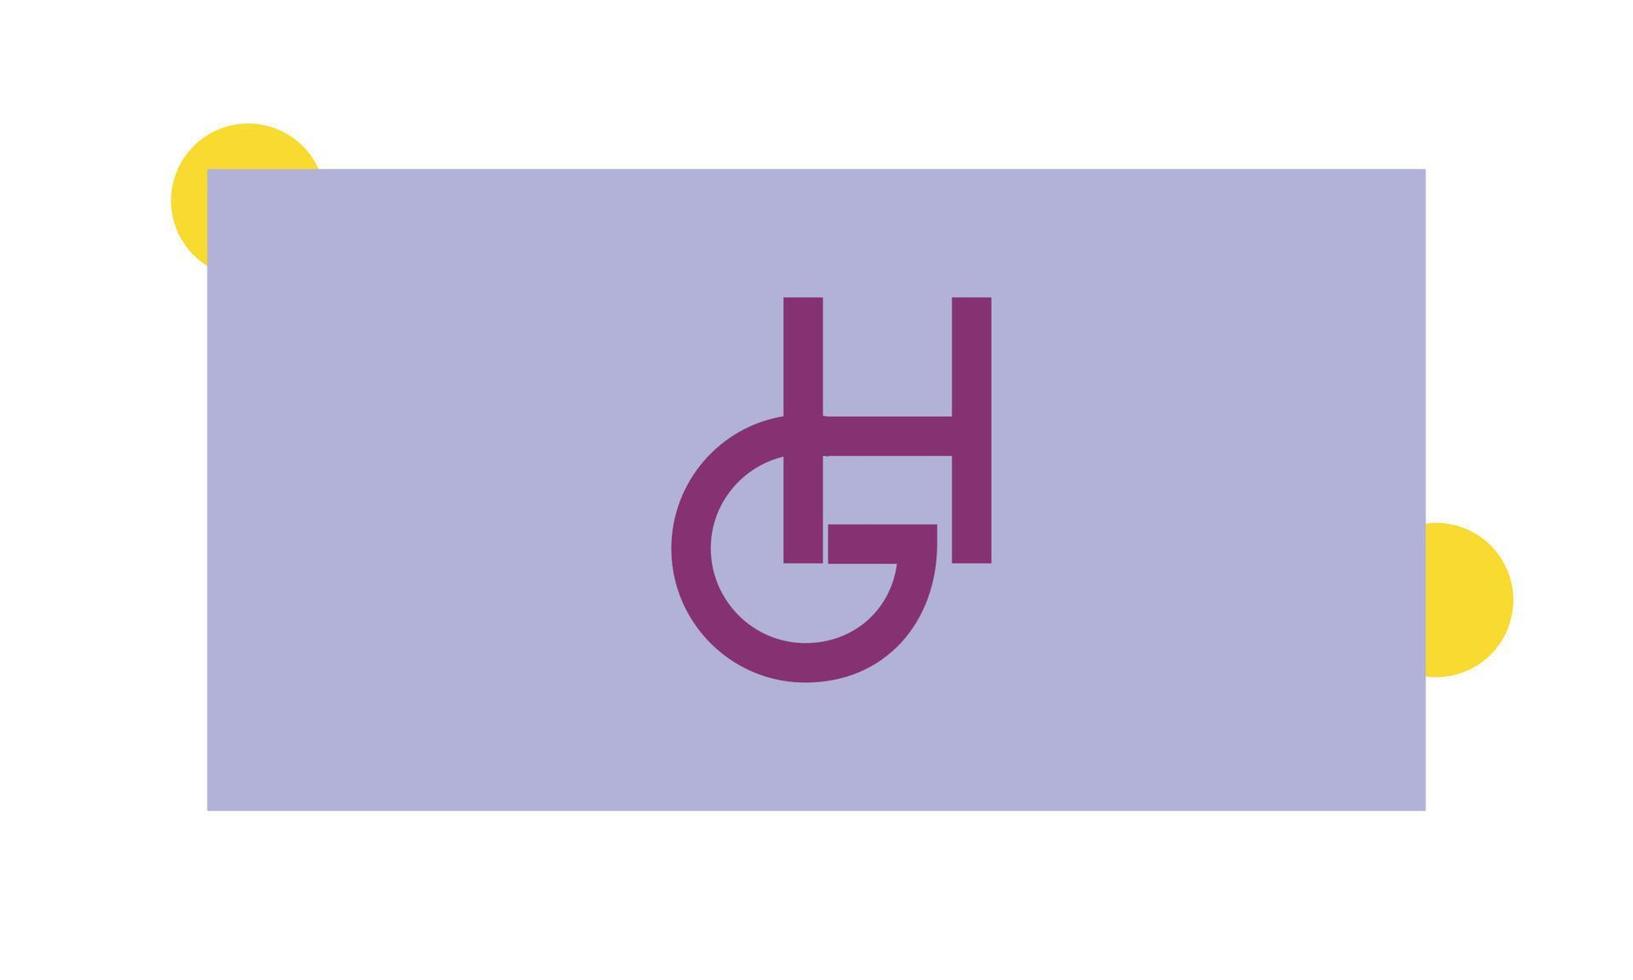 alfabeto letras iniciales monograma logo gh, hg, g y h vector